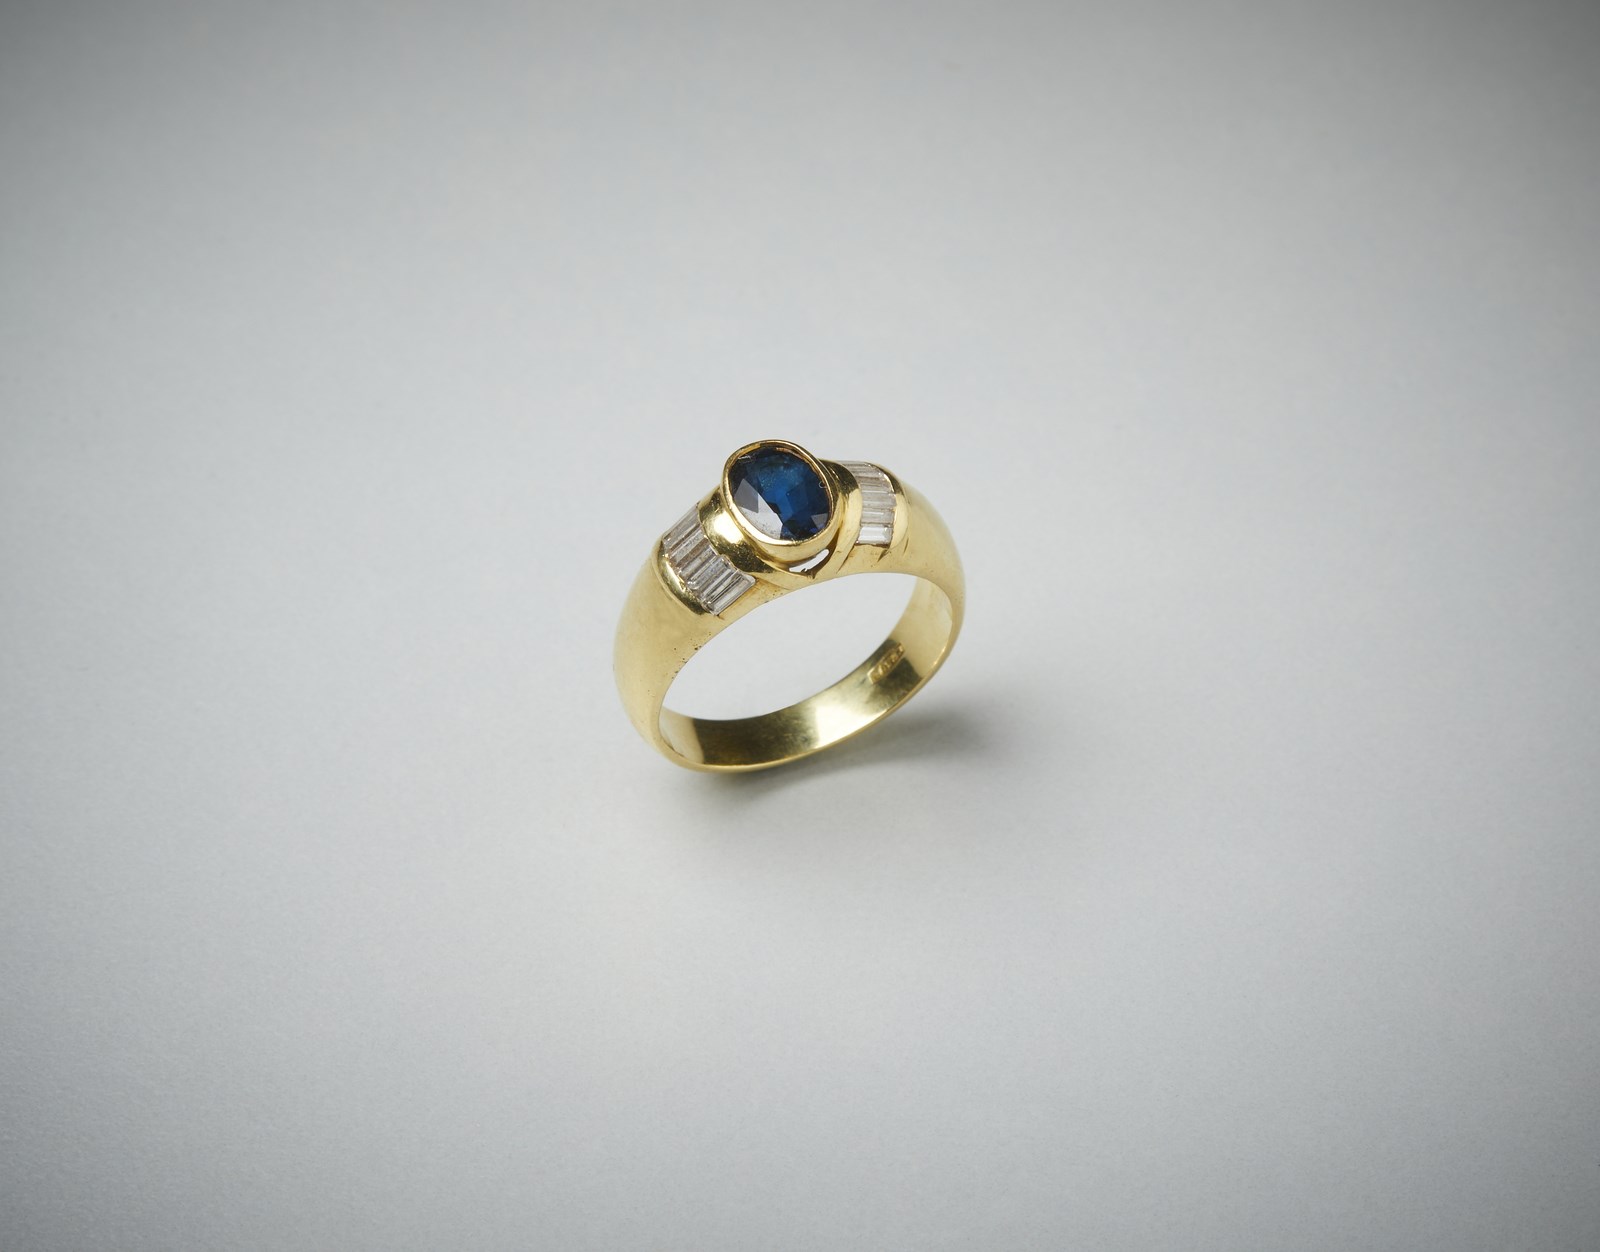 Anello in oro giallo 750/1000  a fascetta con zaffiro blu ovale di 0.70  ct ca. e diamanti bianchi laterali taglio a baguette di 0.75 ct totali circa.   (. )